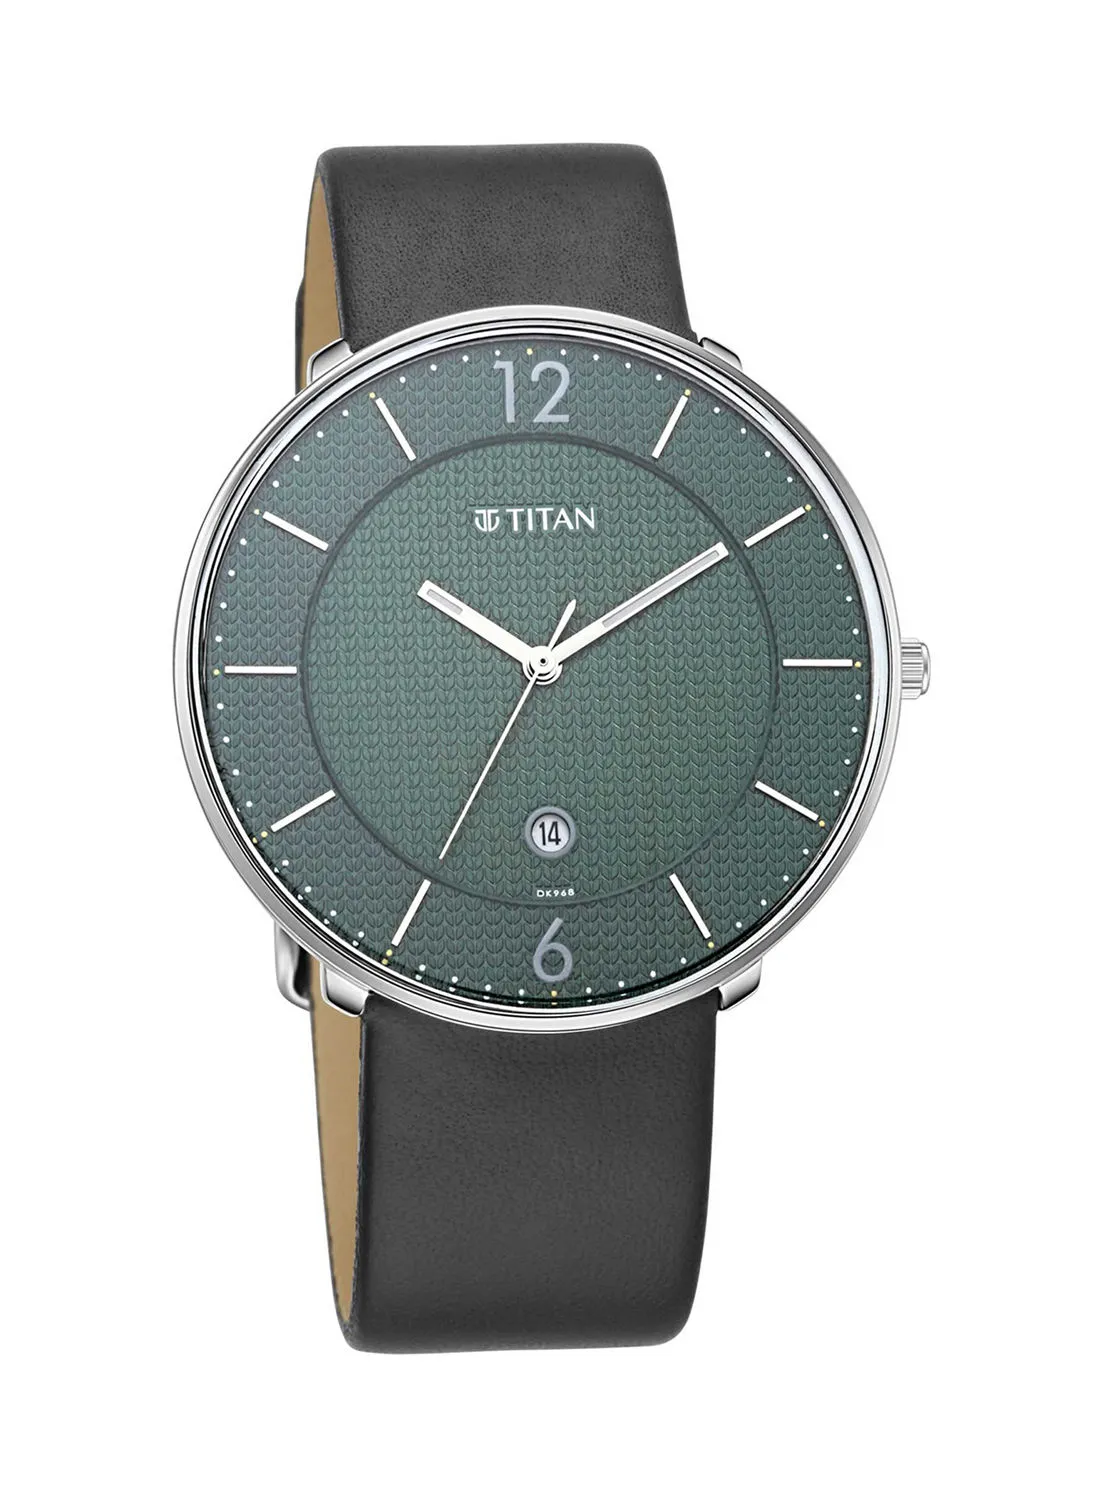 TITAN Leather Analog Wrist Watch 1849SL02